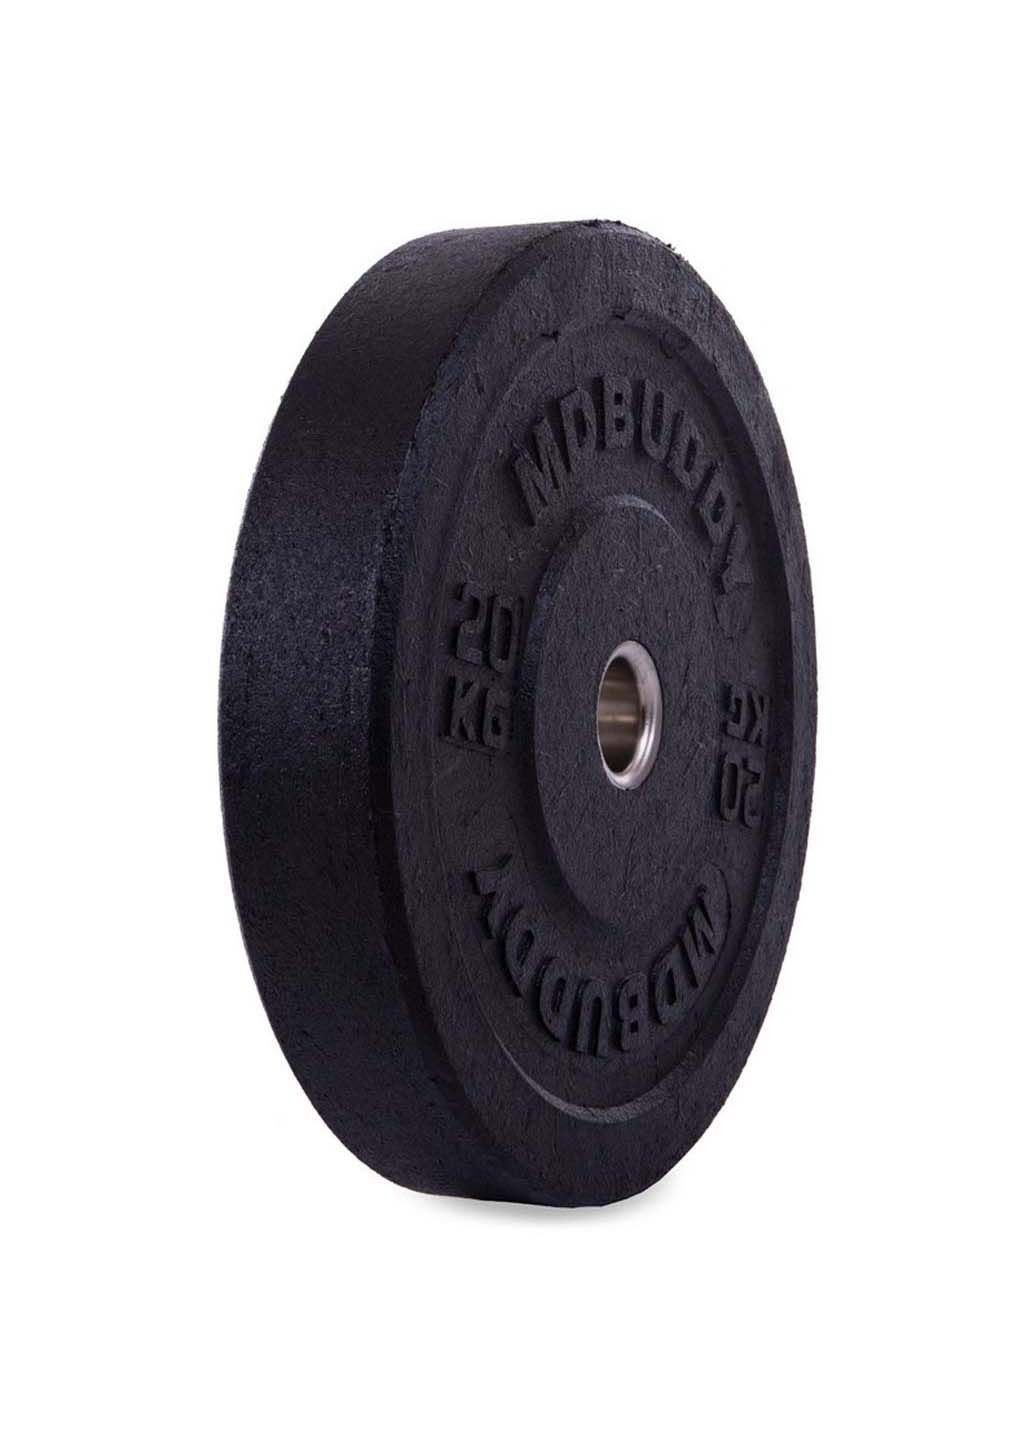 Блины диски бамперные для кроссфита Bumper Plates TA-2676 20 кг MDbuddy (286043746)